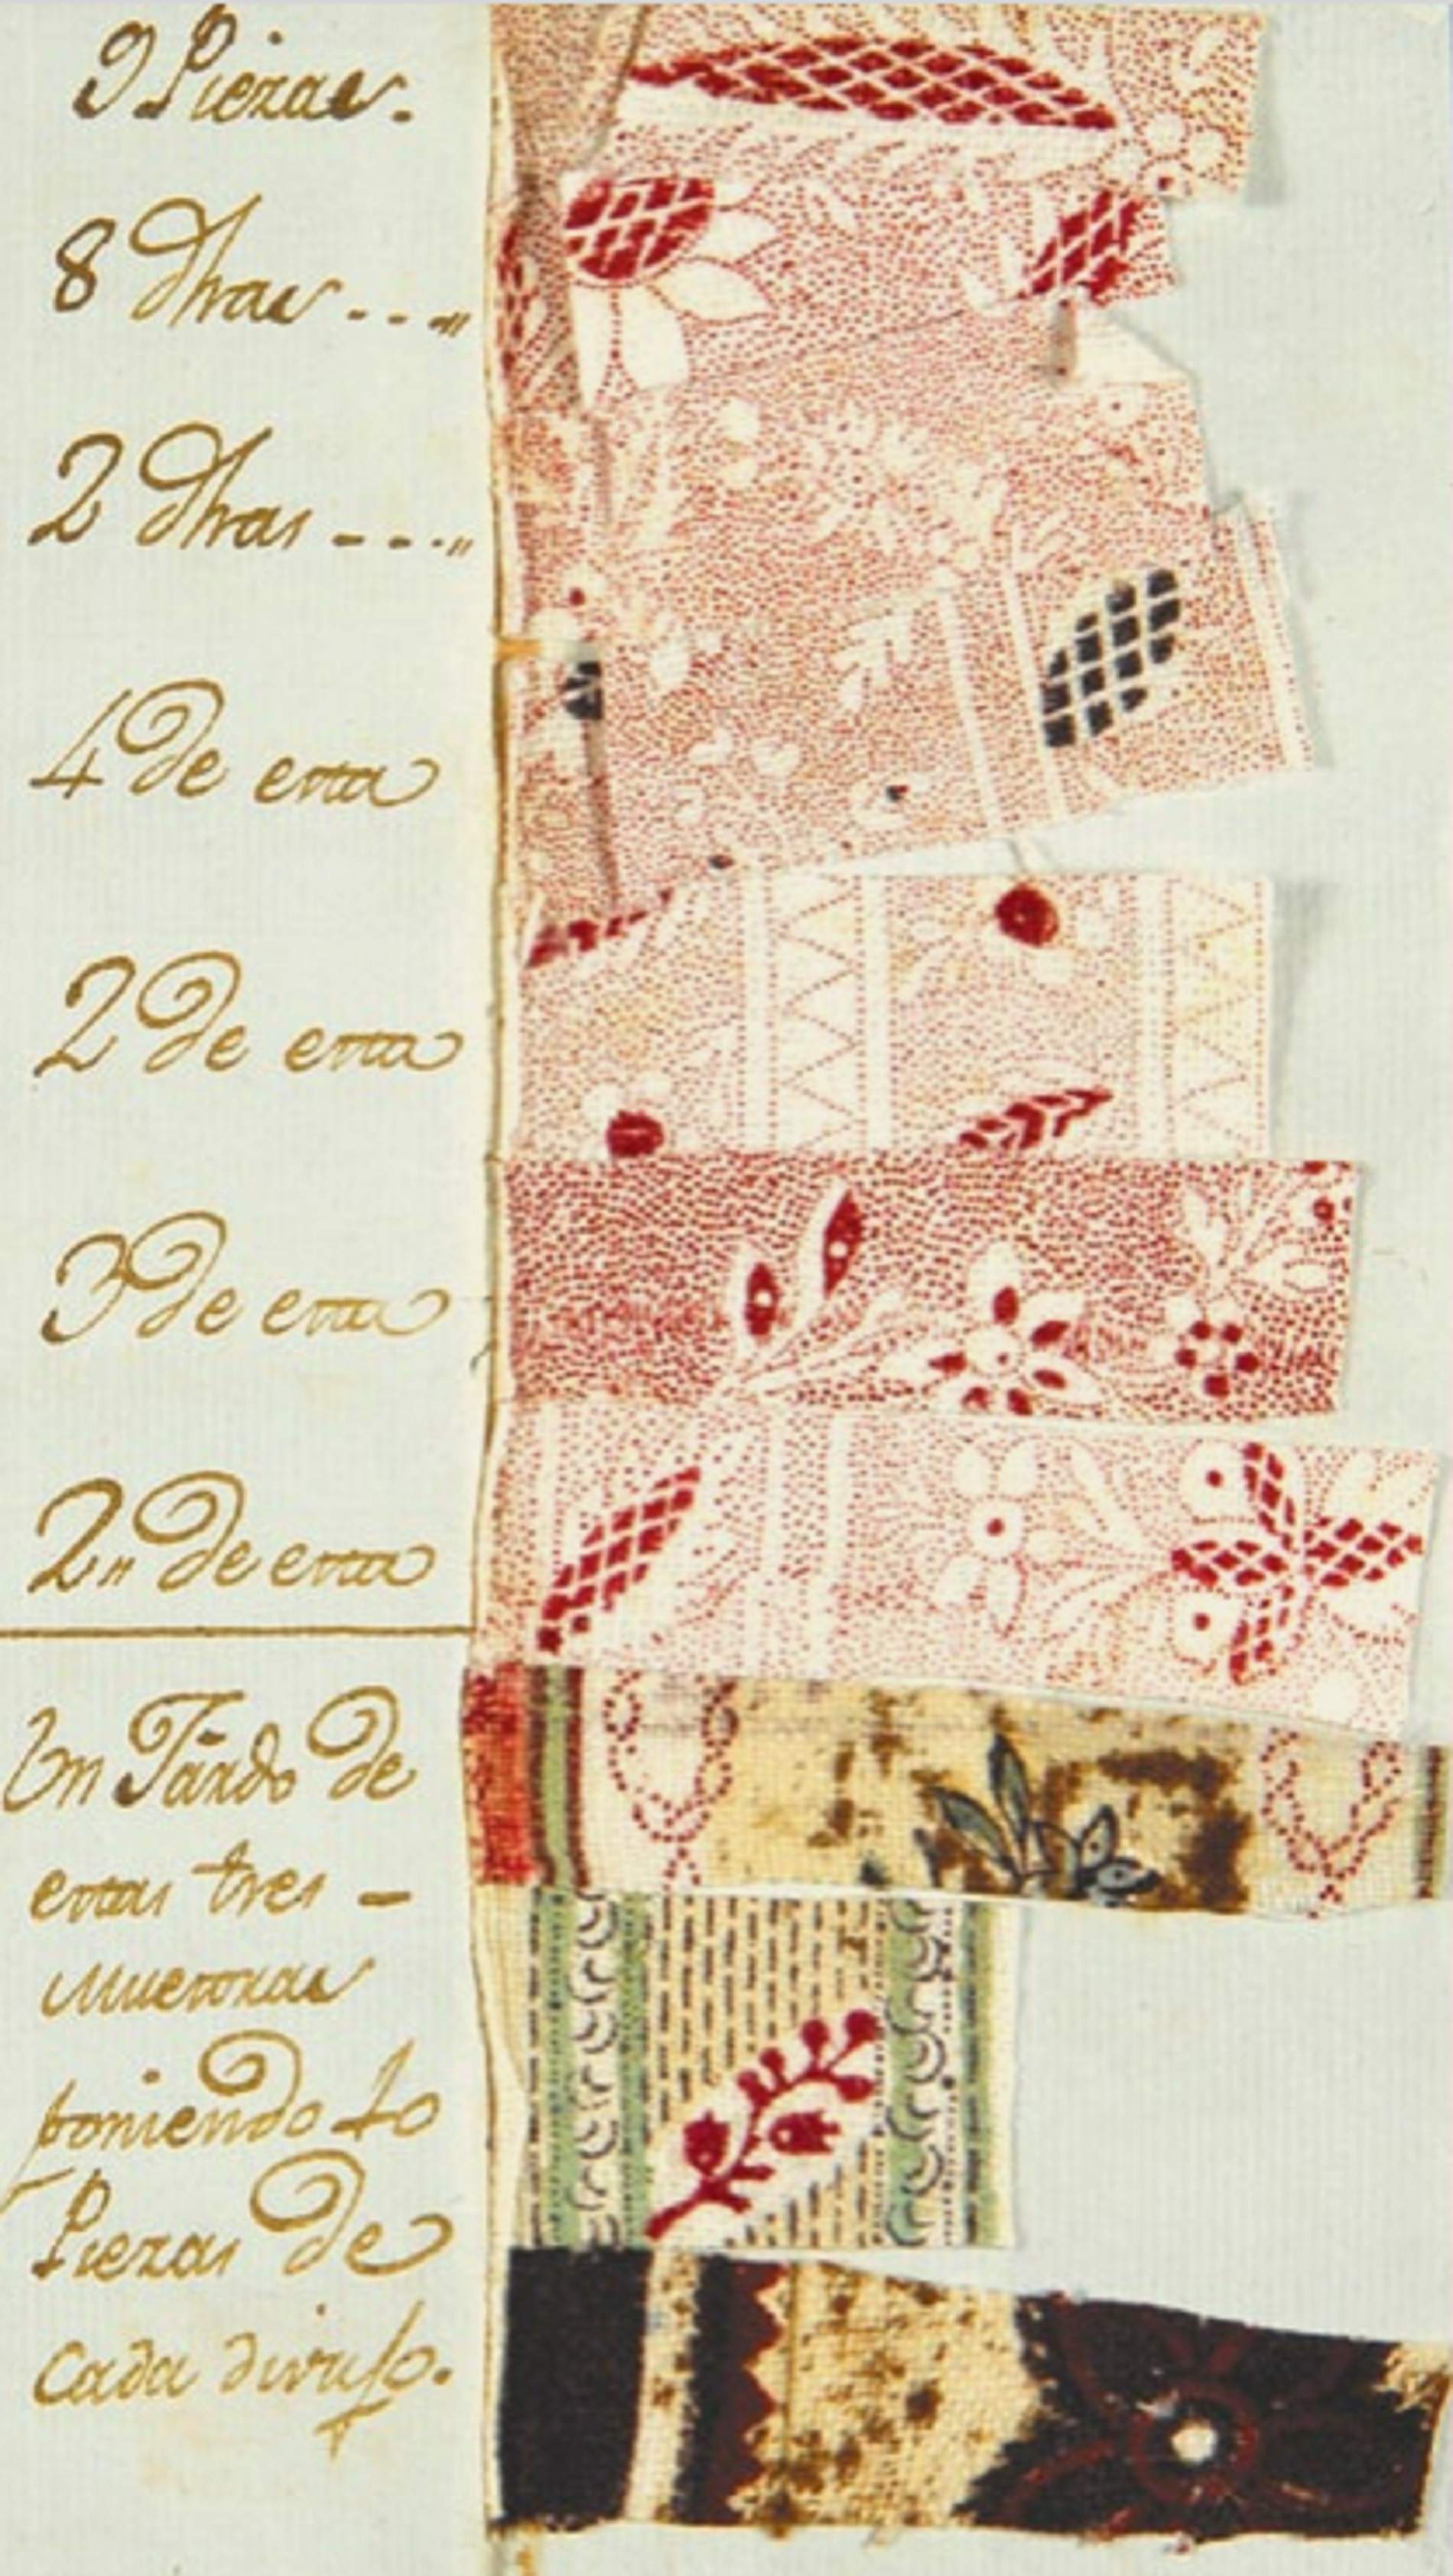 Comanda dirigida al fabricant Erasme de Gómina per un botiguer de Sevilla amb diferents mostres d'indianes (1792). Font AHCB (Arxiu Historic de la ciutat de Barcelona)